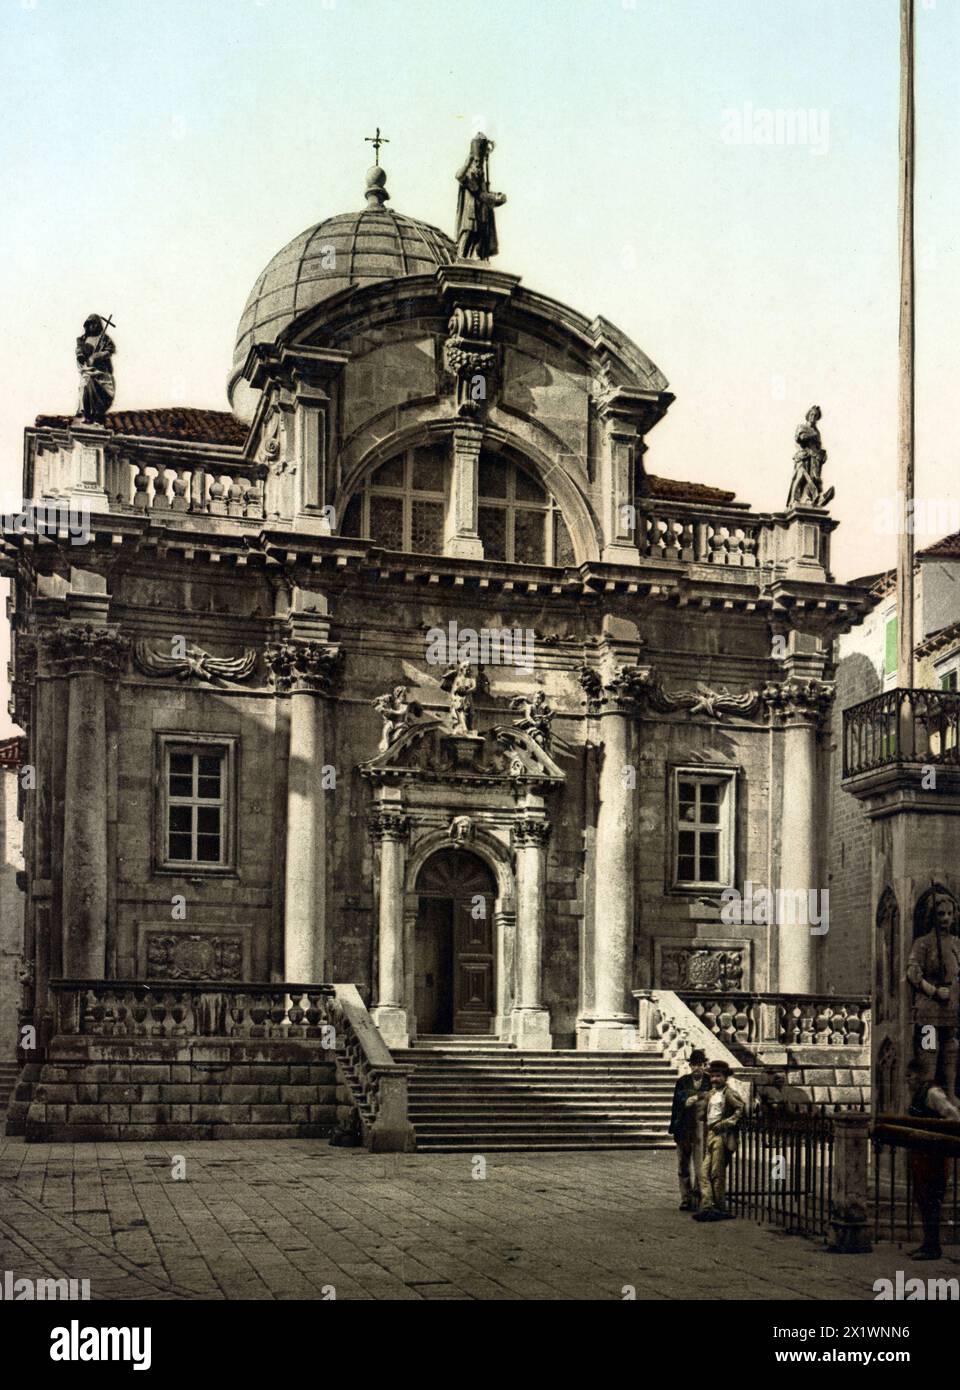 Ragusa. Chiesa San Biago, heute Dubrovnik, Kroatien, um 1890, Historisch, digital restaurierte Reproduktion von einer Vorlage aus dem 19. Jahrhundert Stock Photo